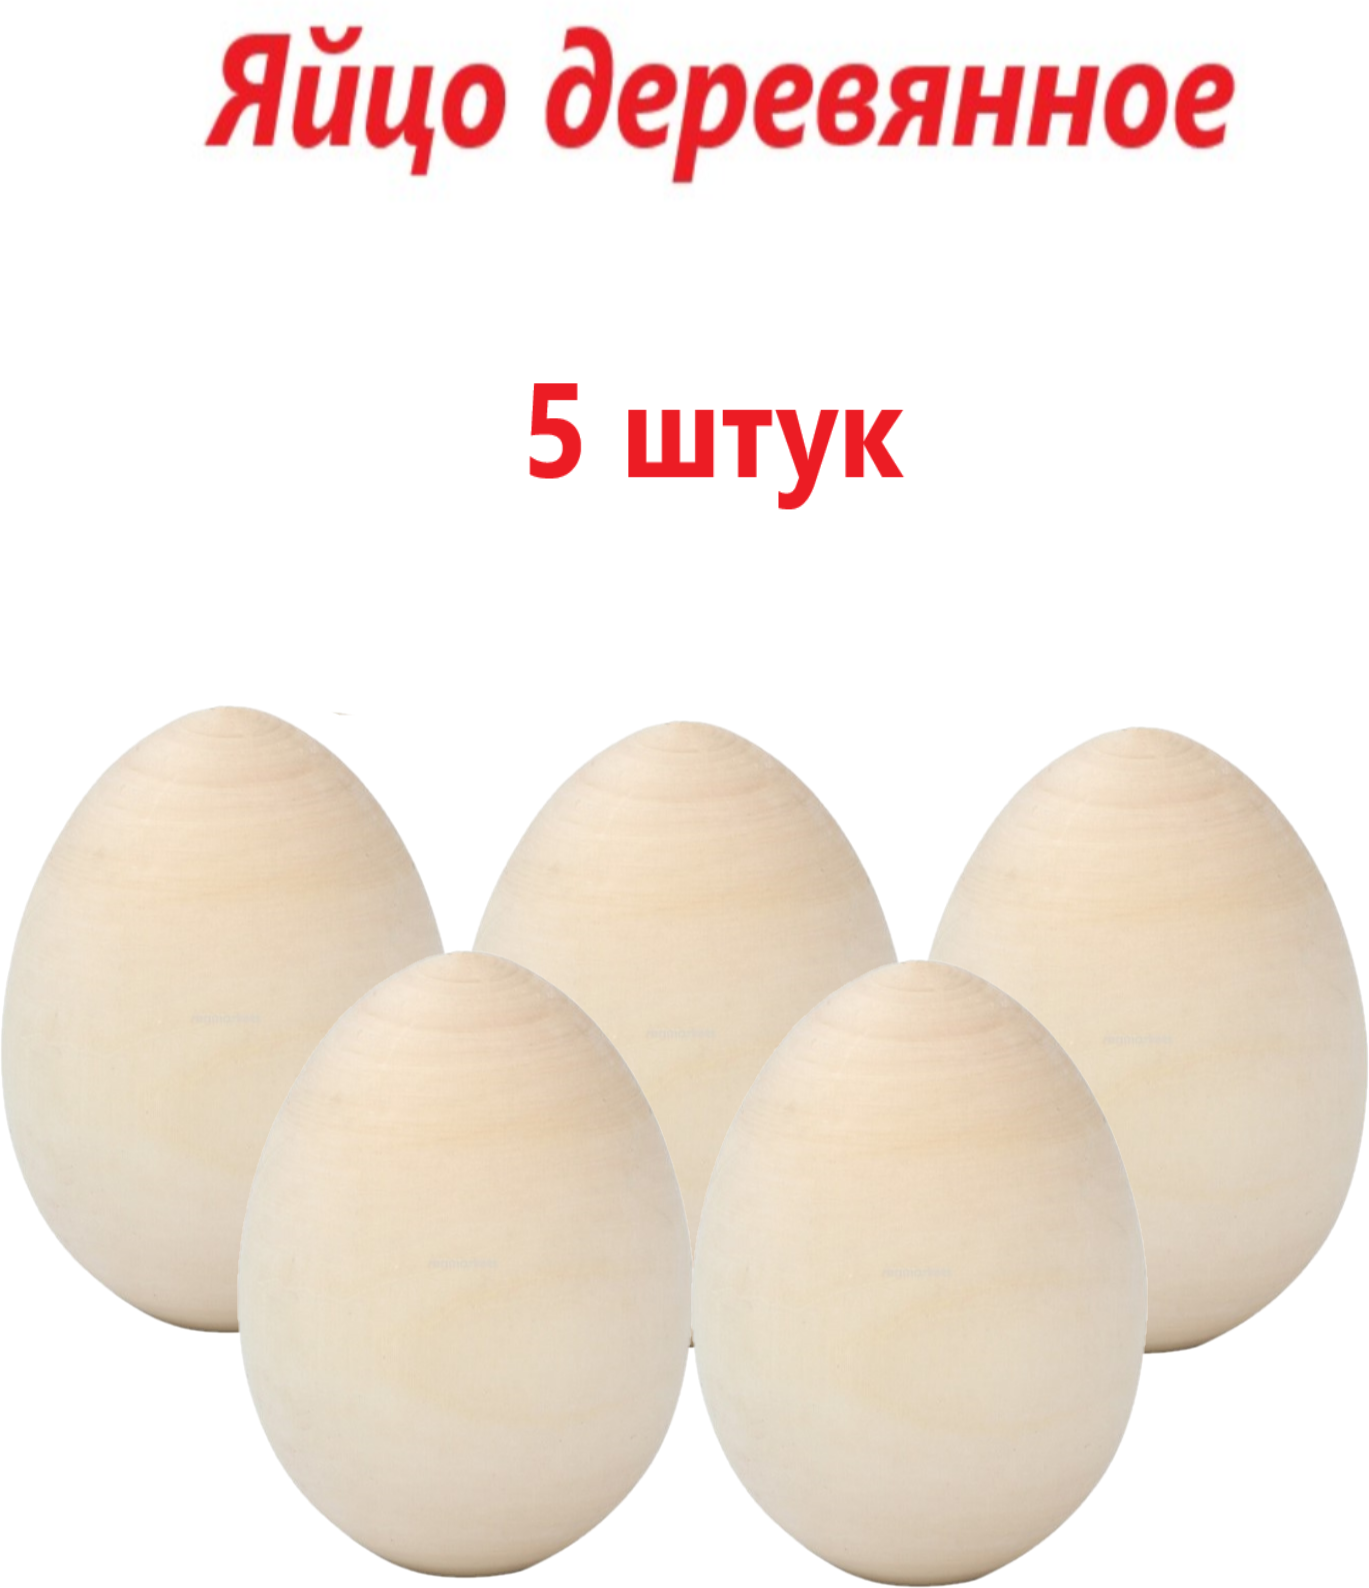 Заготовка для росписи яйцо деревянное пасхальное 5 шт